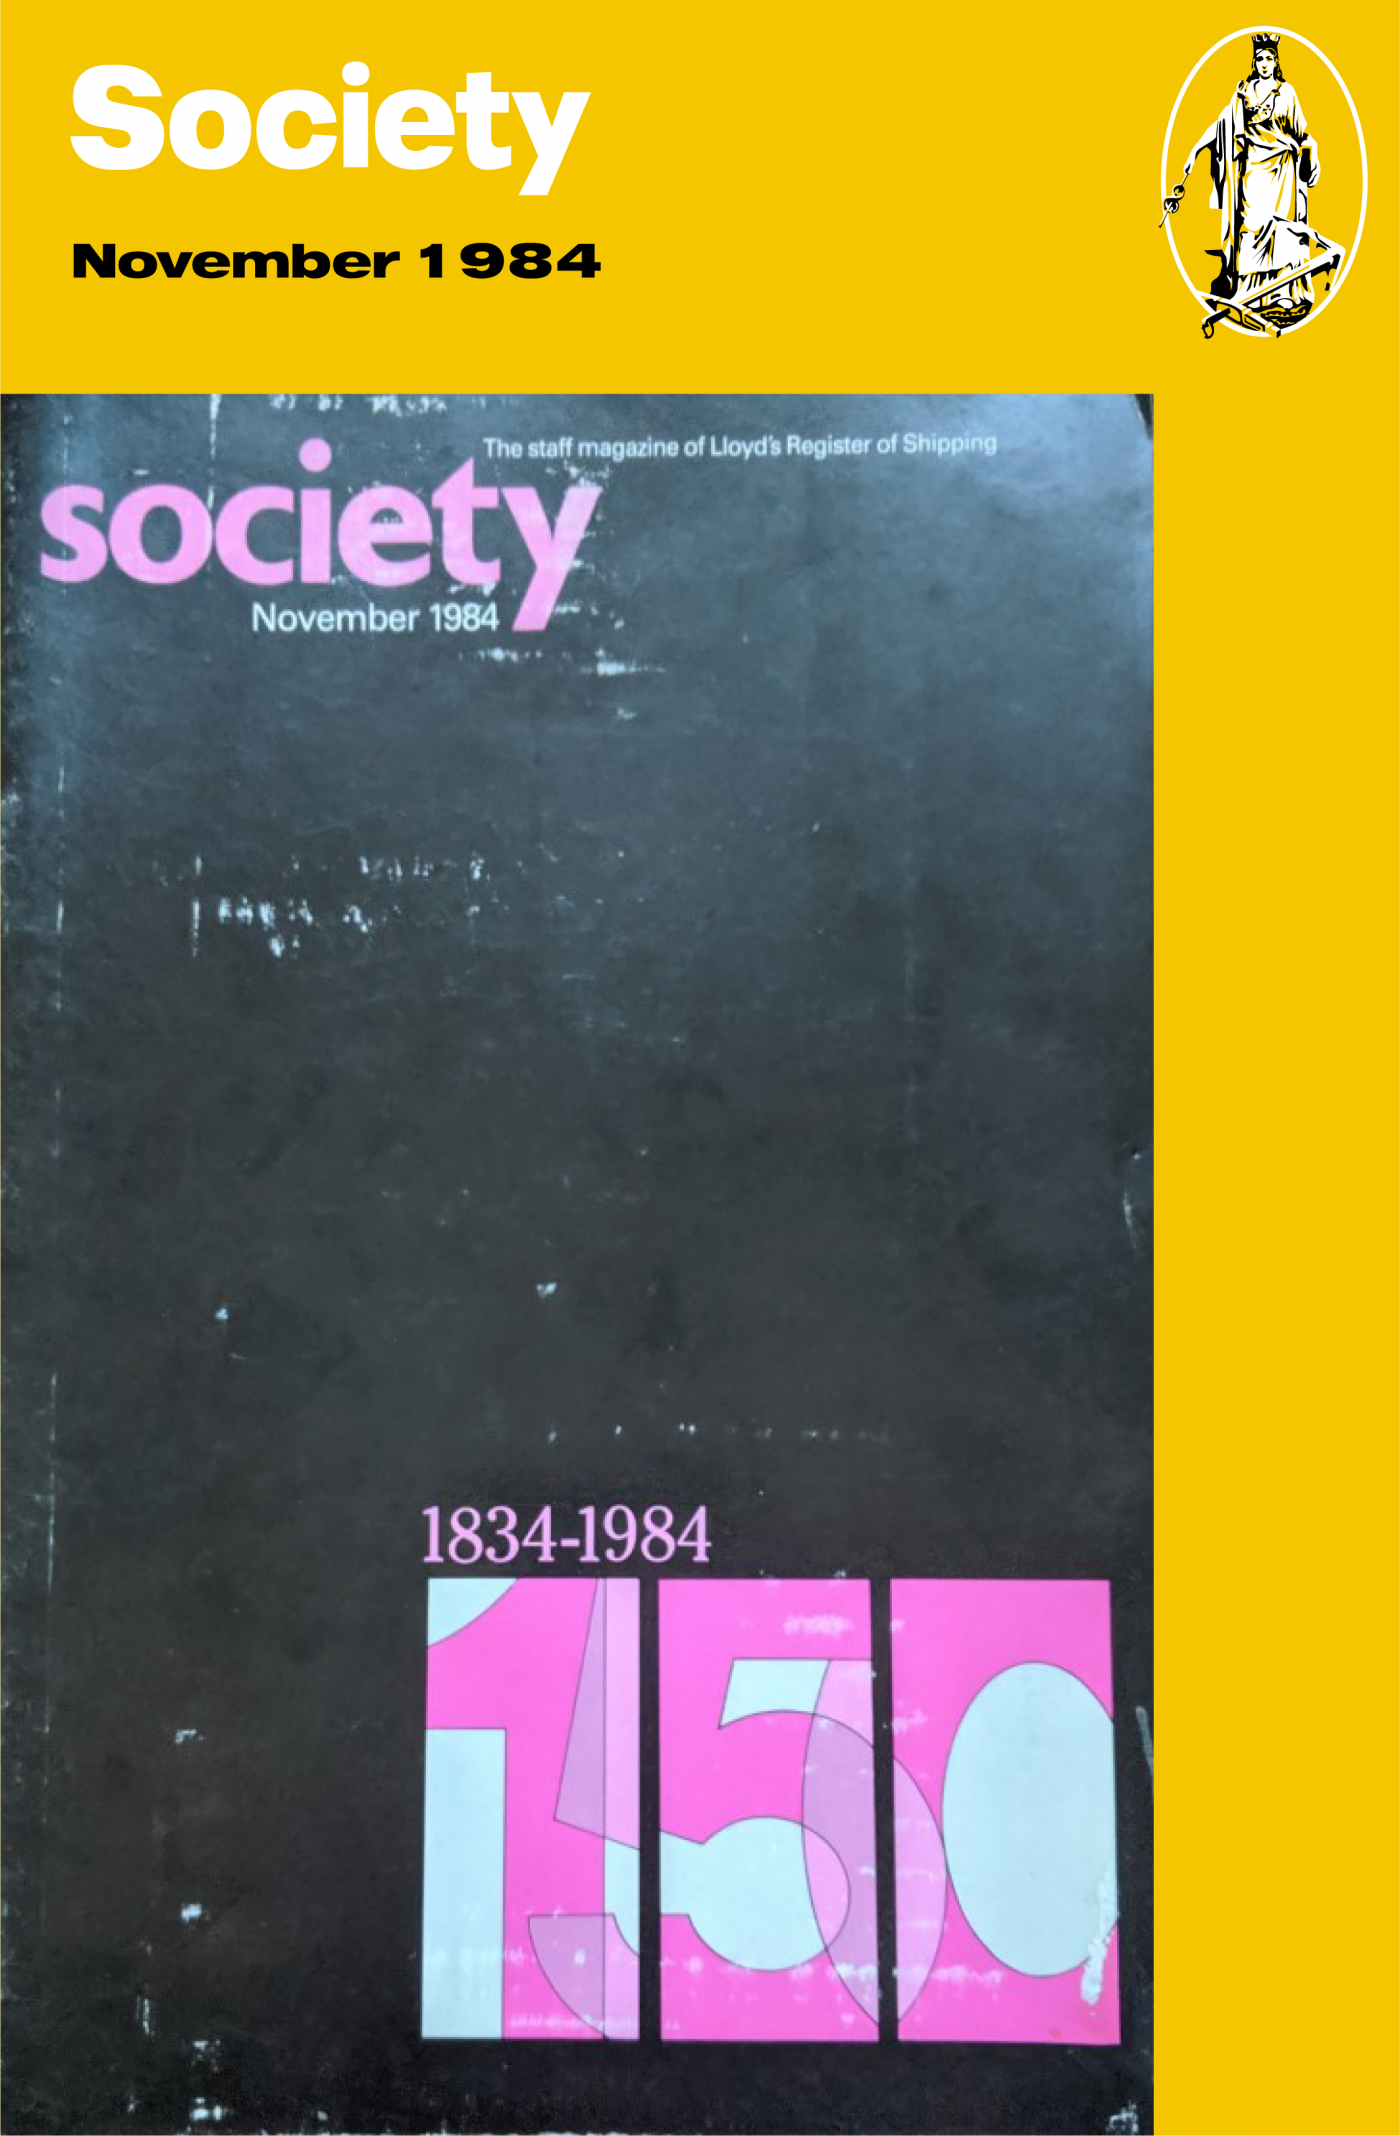 Society blog Nov 84